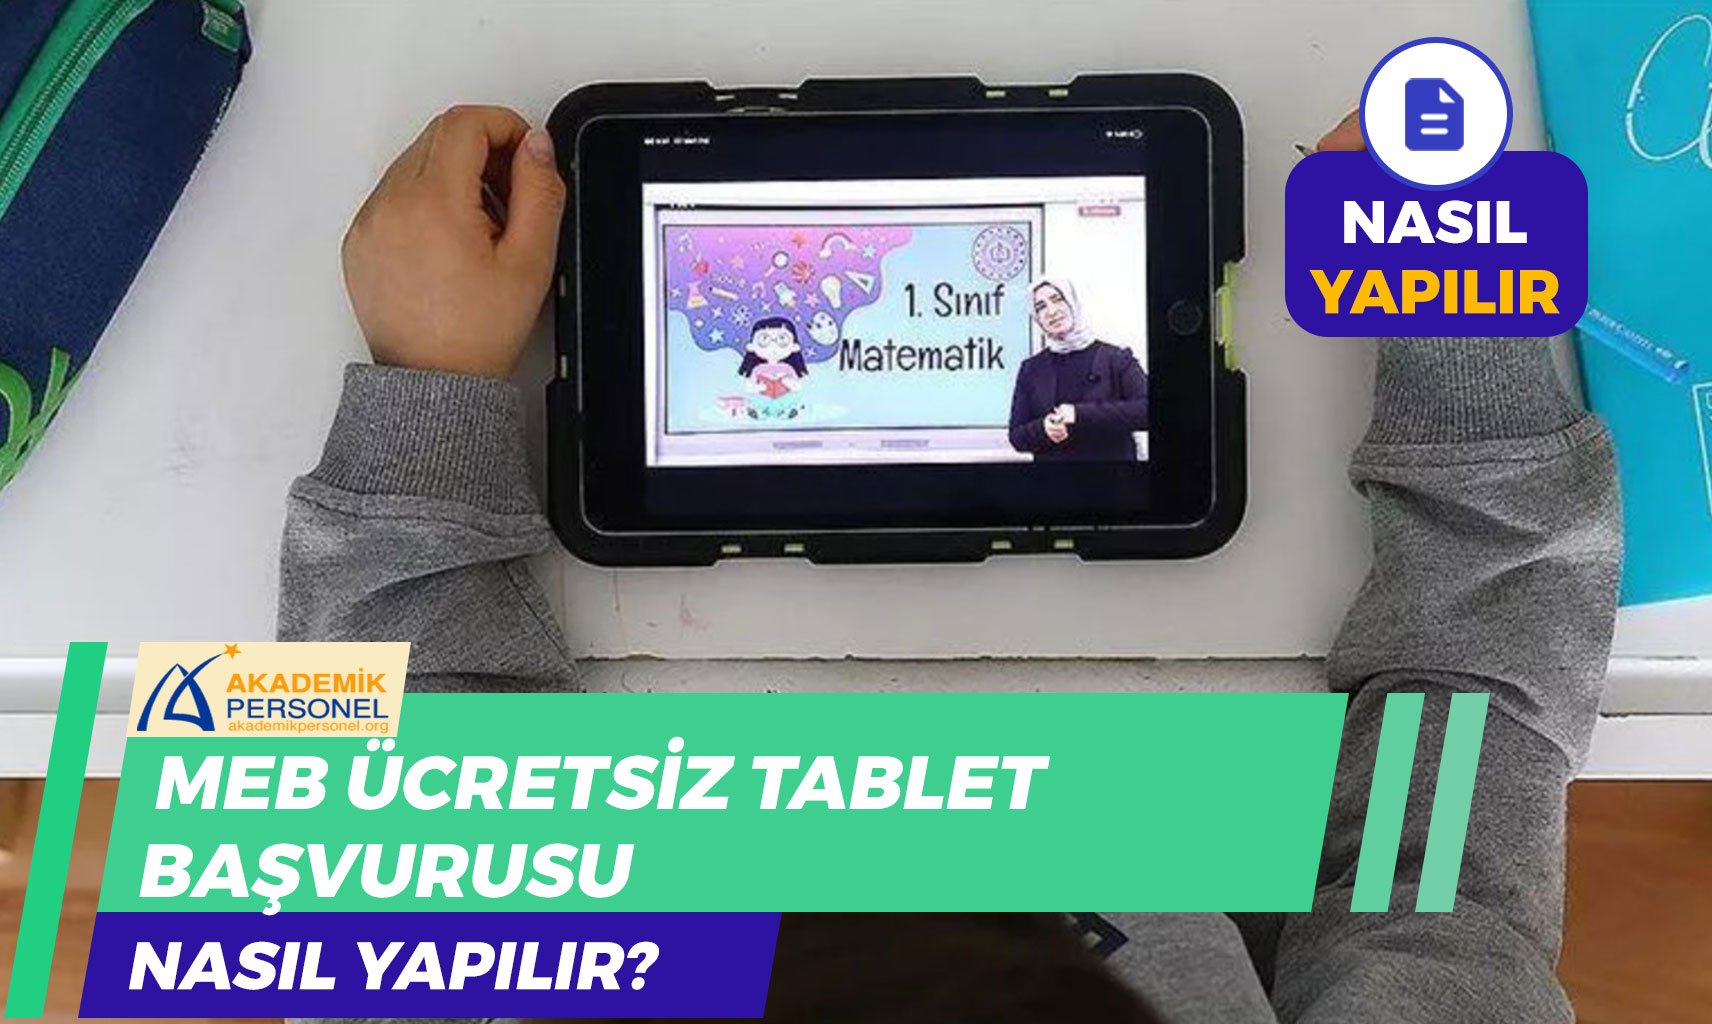 MEB Ücretsiz Tablet Başvurusu Nasıl Yapılır? Başvuru Formu!